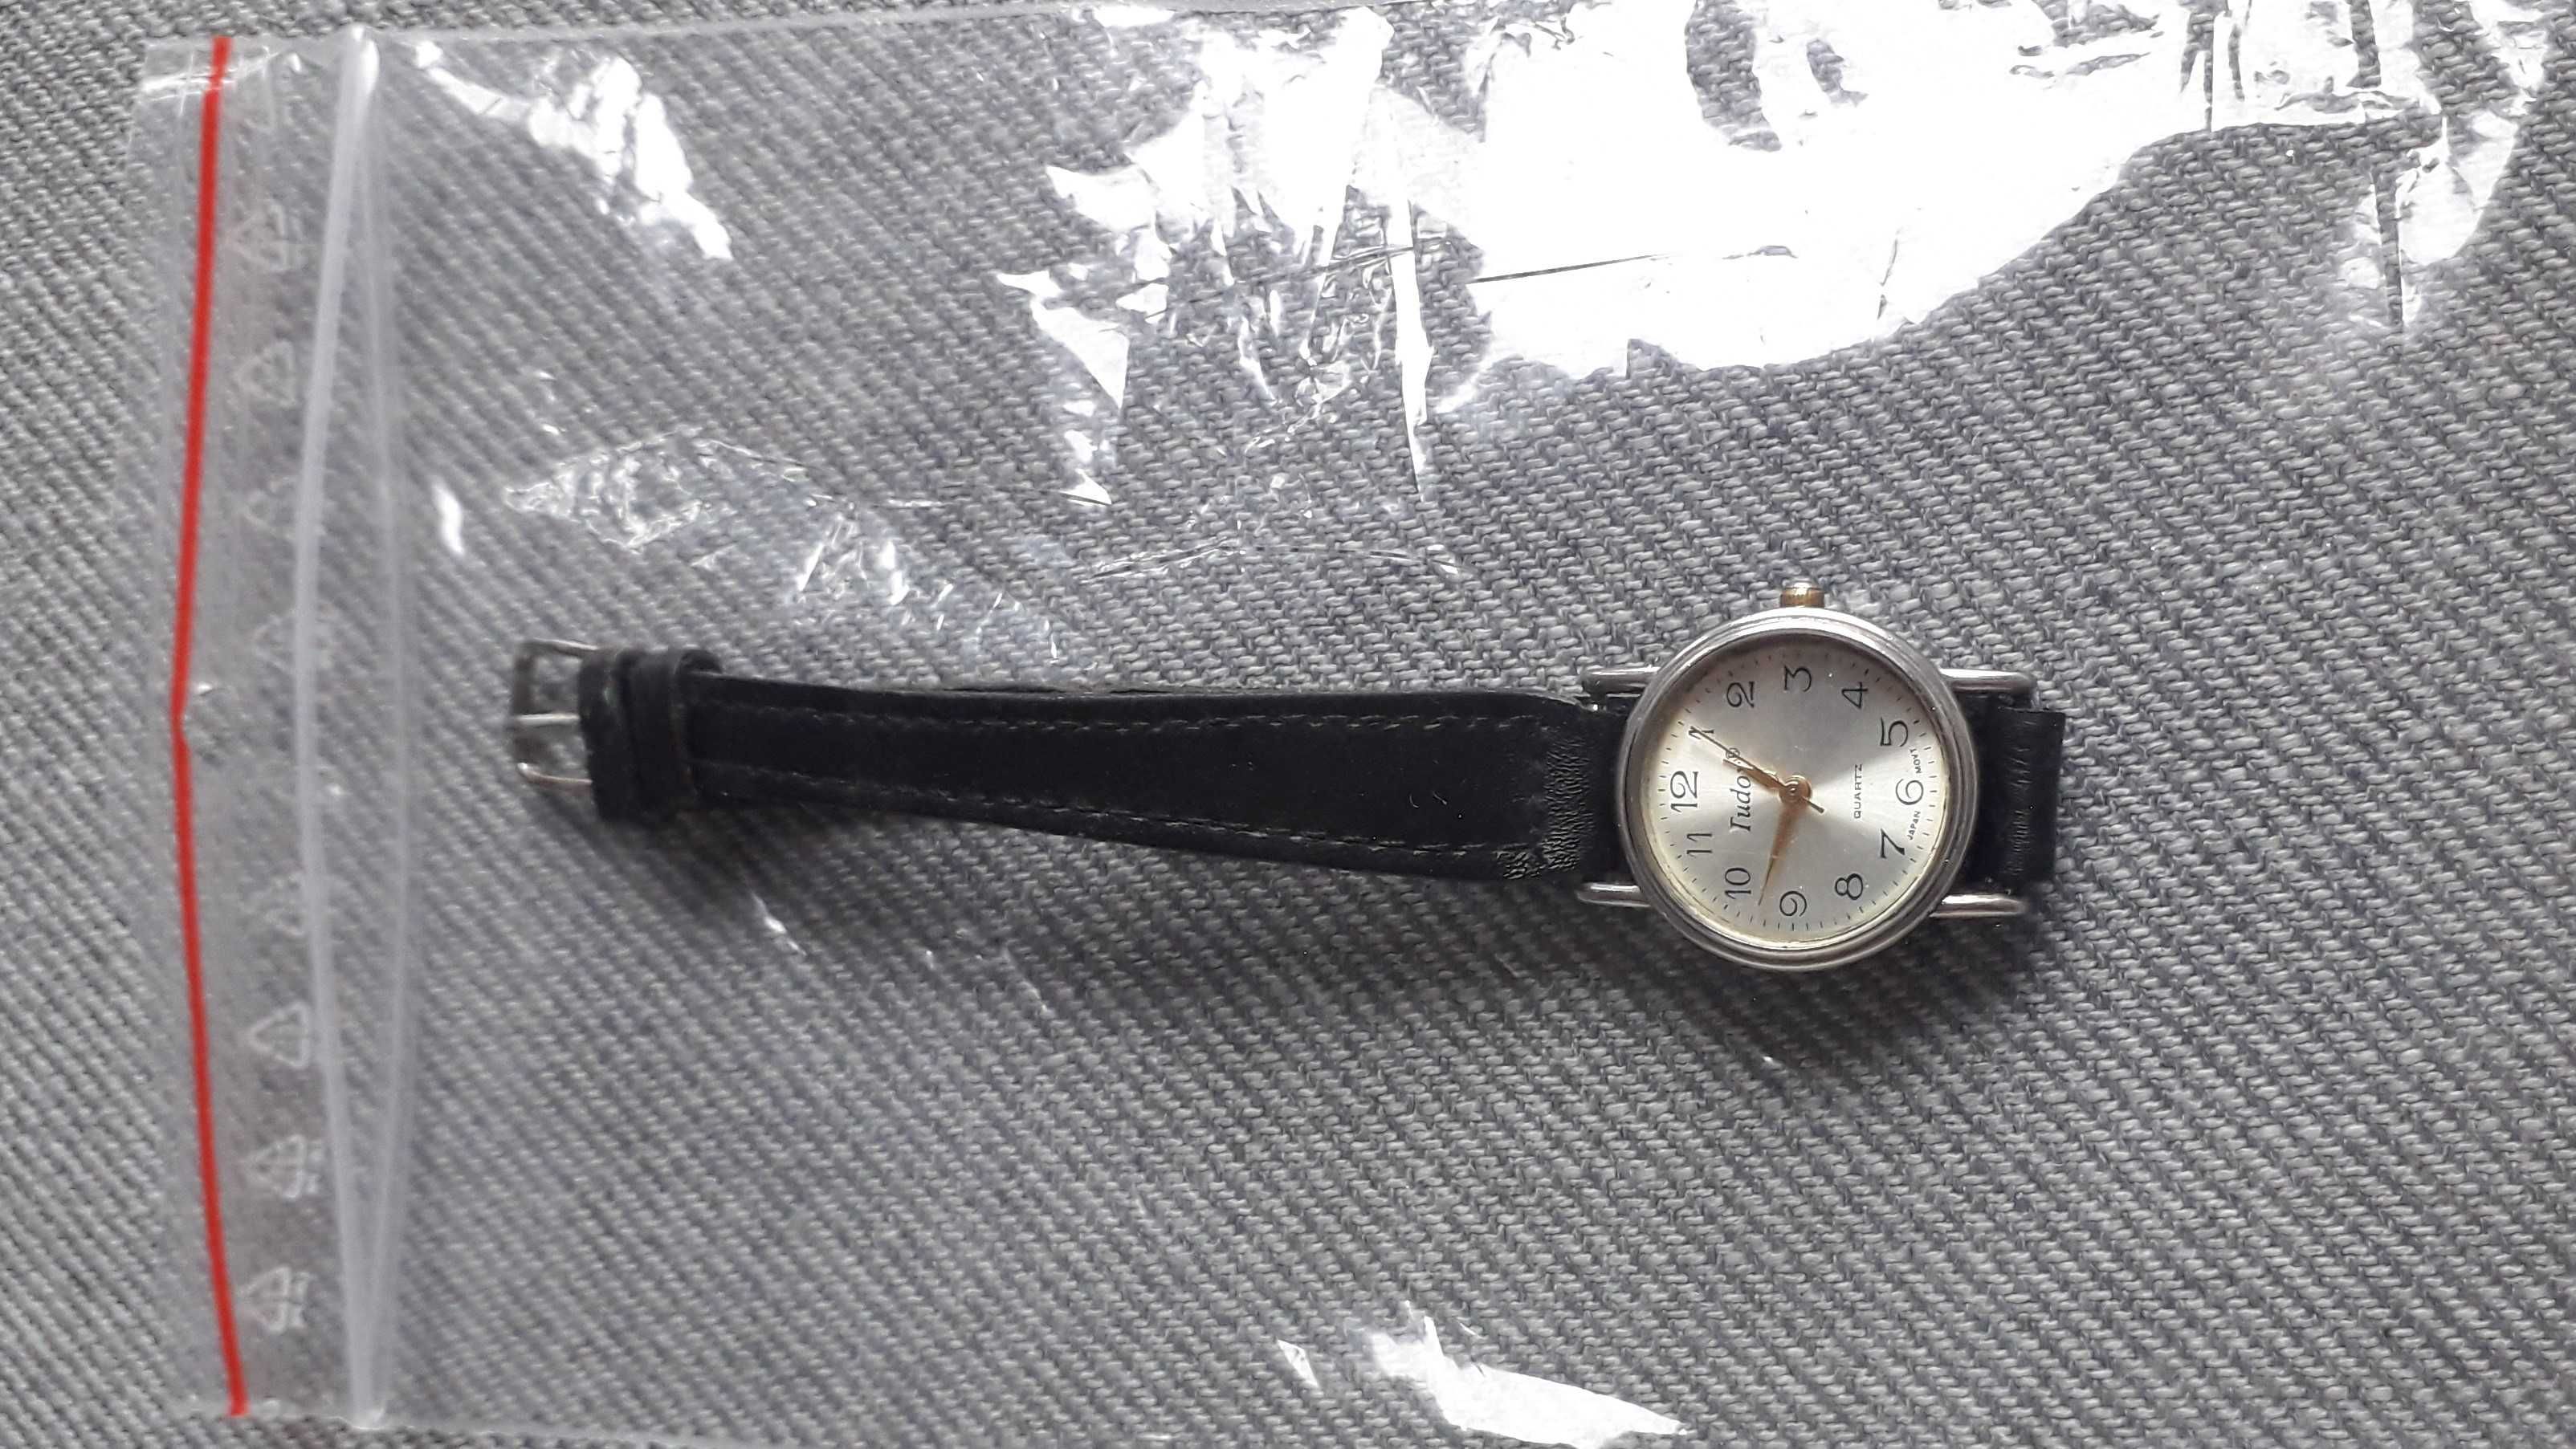 Zegarek Tudox naręczny damski kwarcowy używany sprawny punktualny.